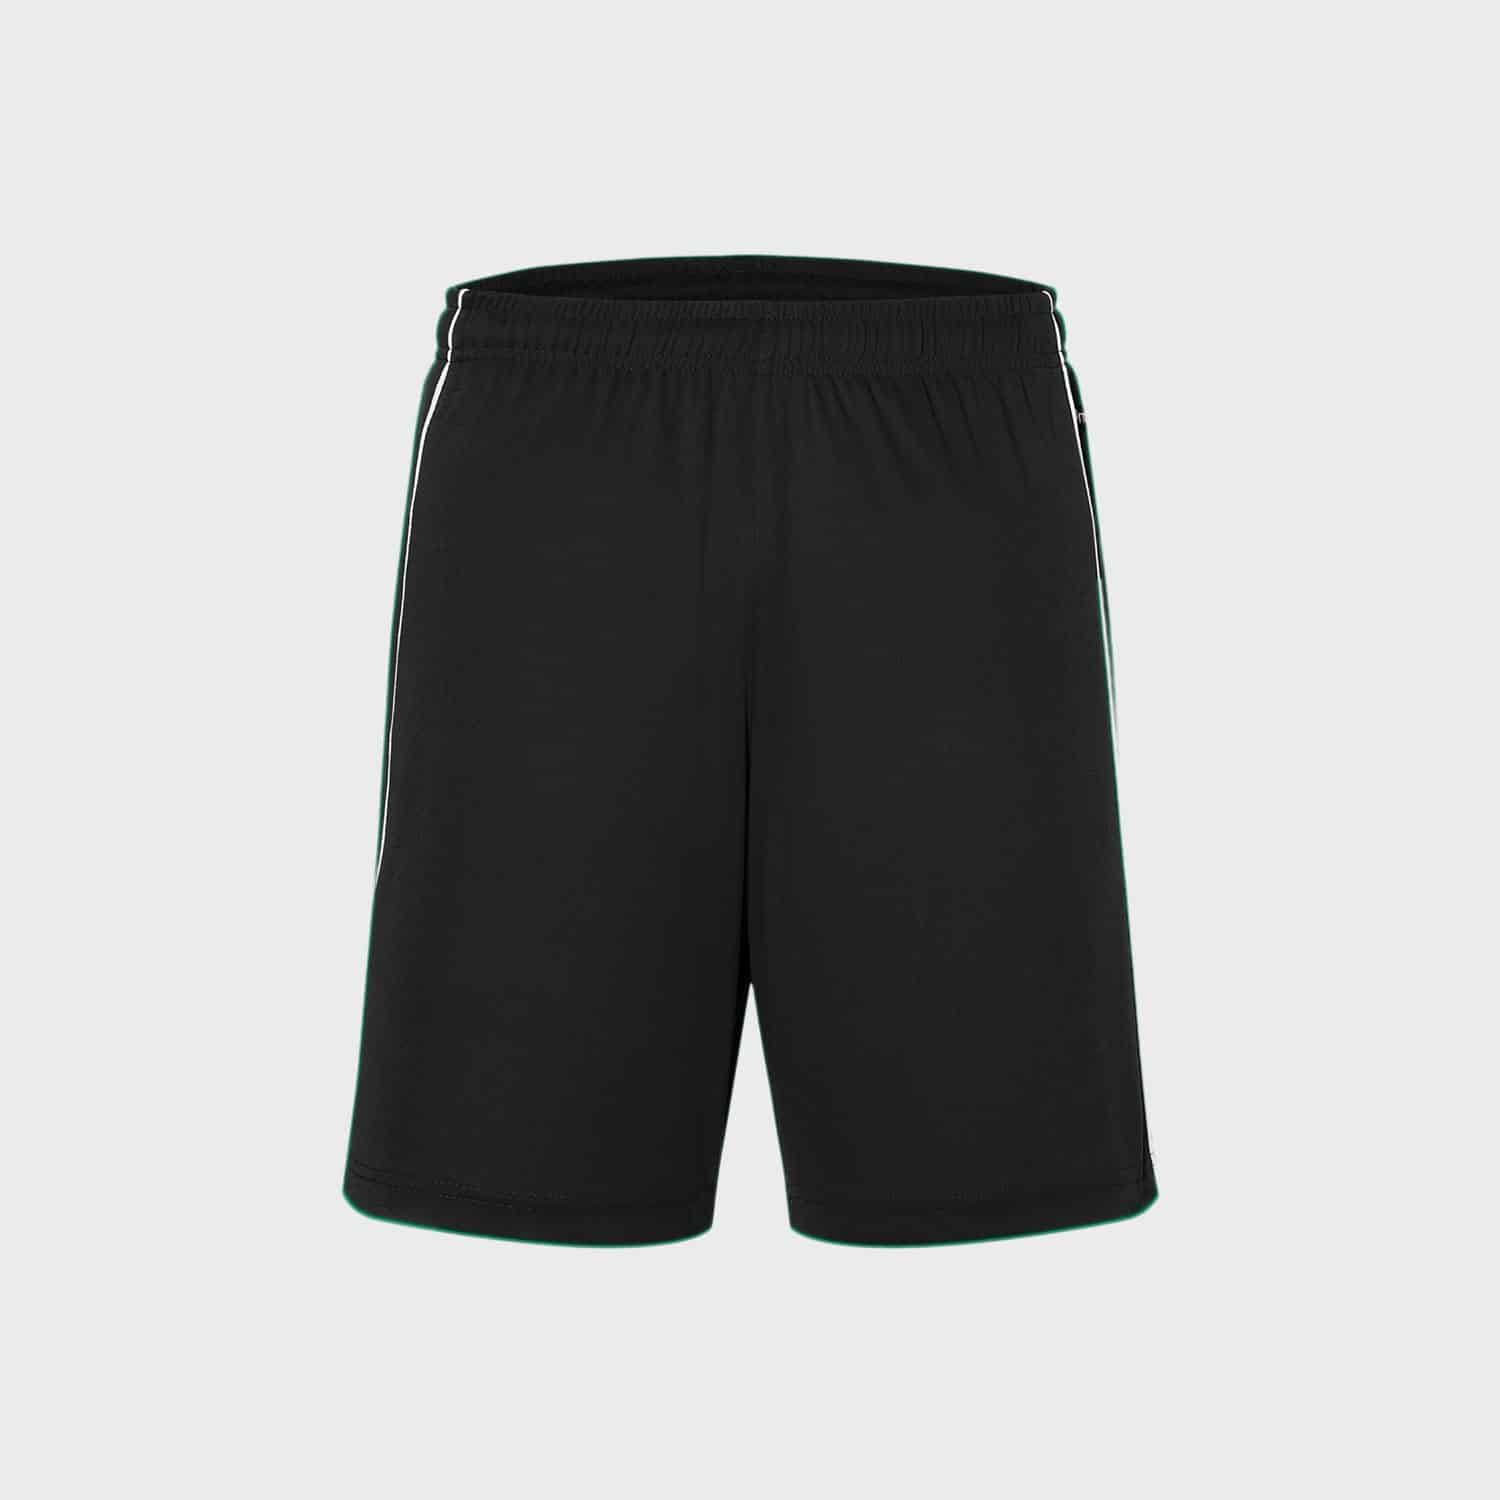 sporthosen-mannschafts-hosen-shorts-unisex-black-white-kaufen-besticken_StickManufaktur